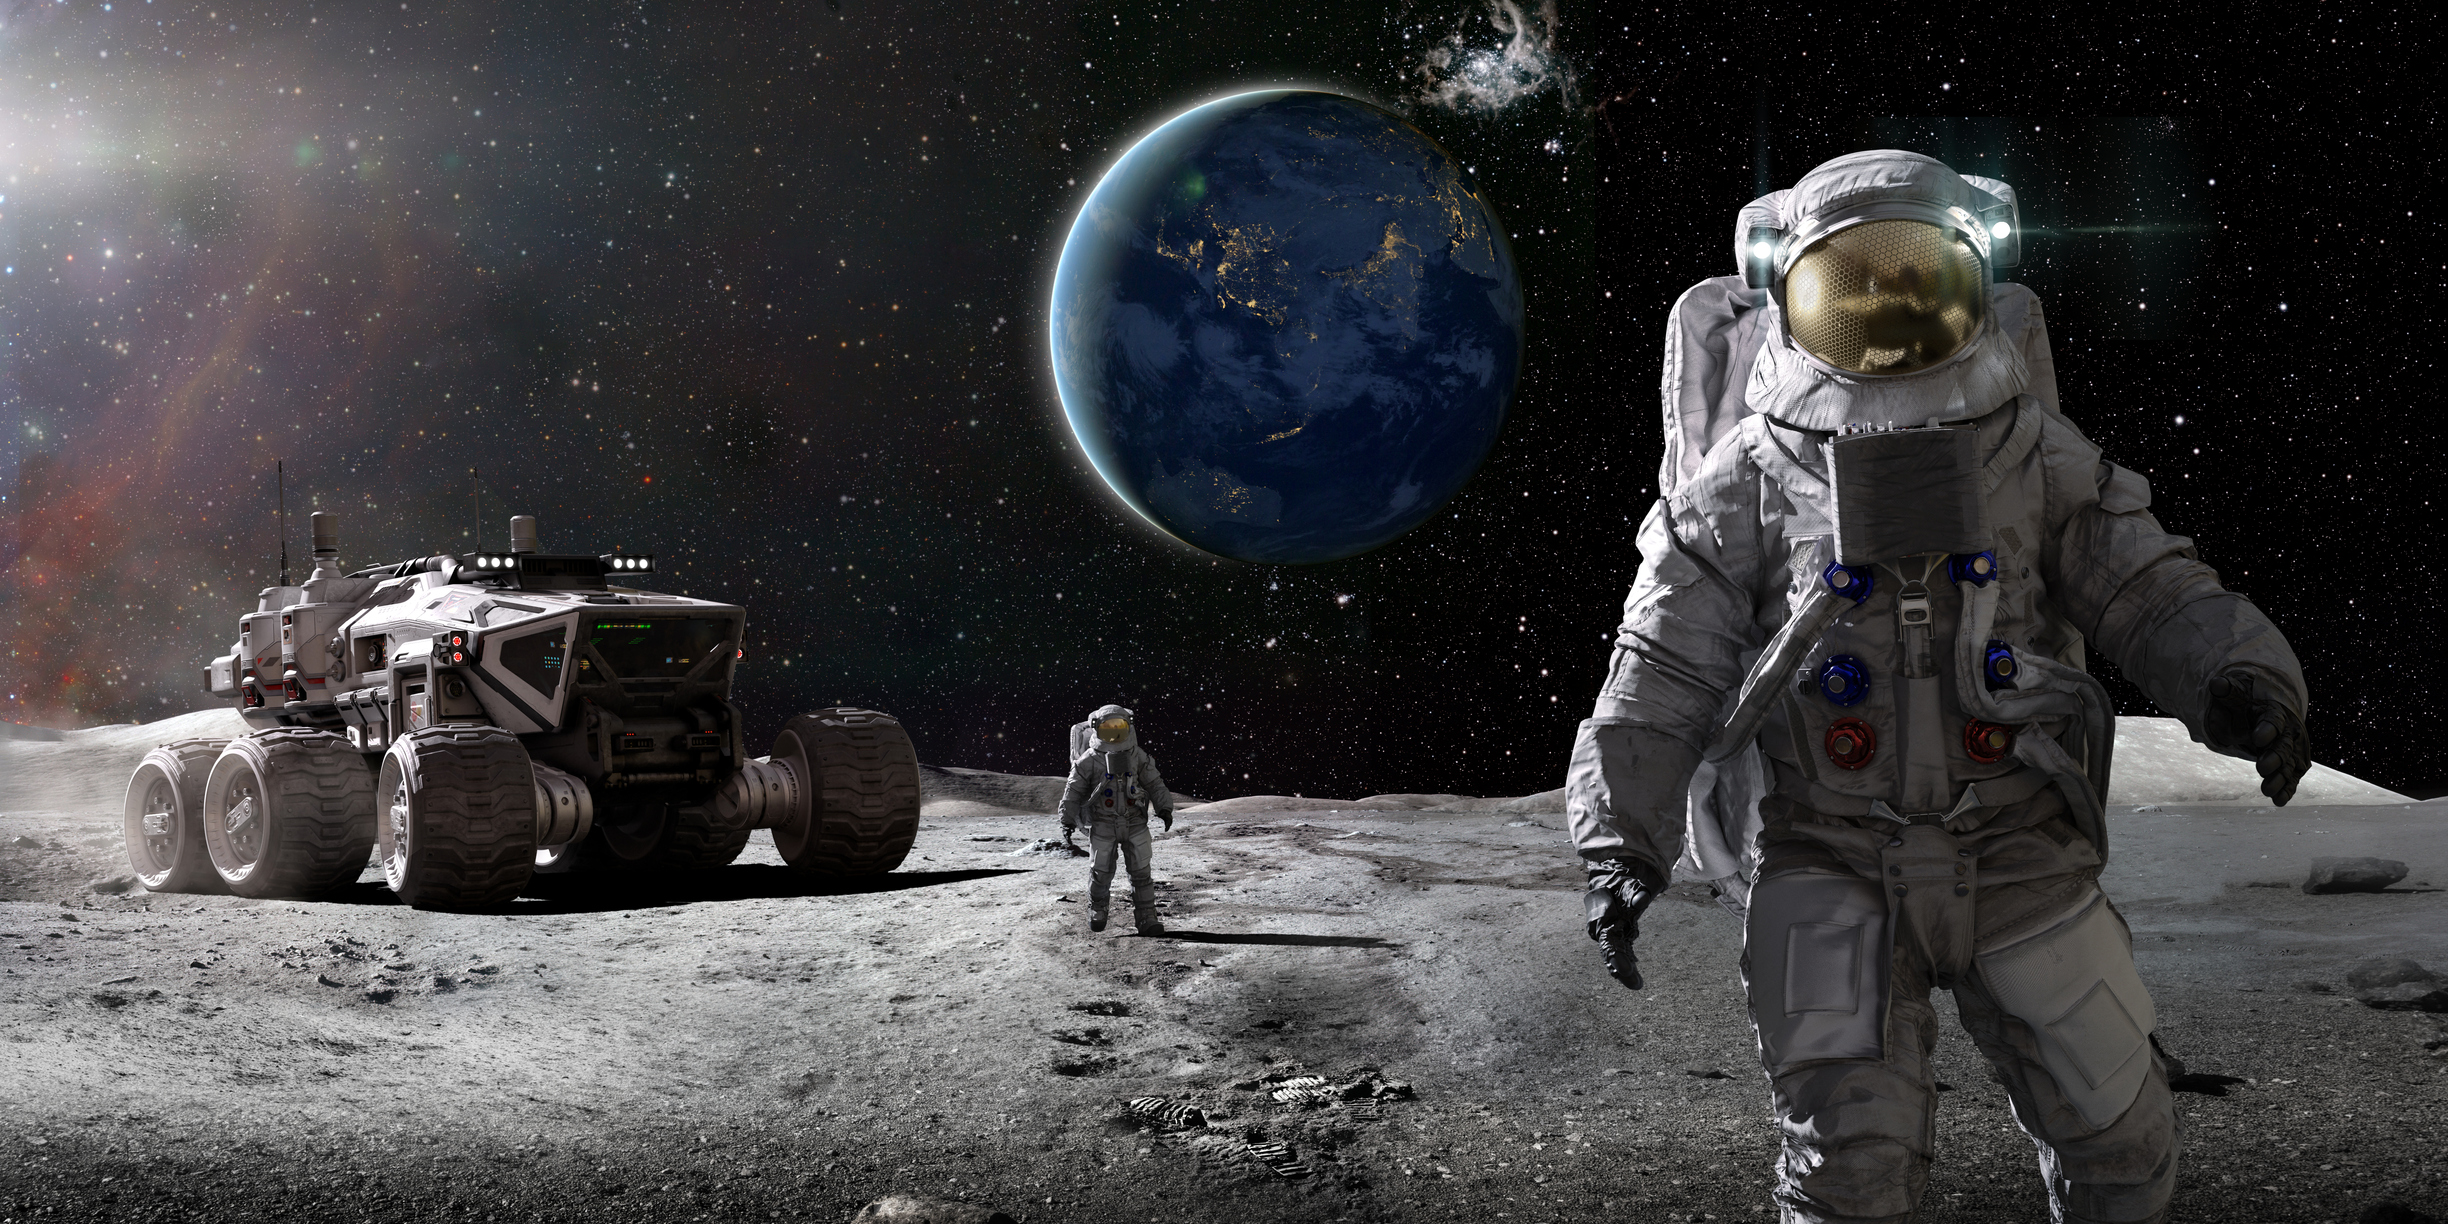 アルテミス計画による有人月面探査は、2026年に予定されている（イメージ画像）